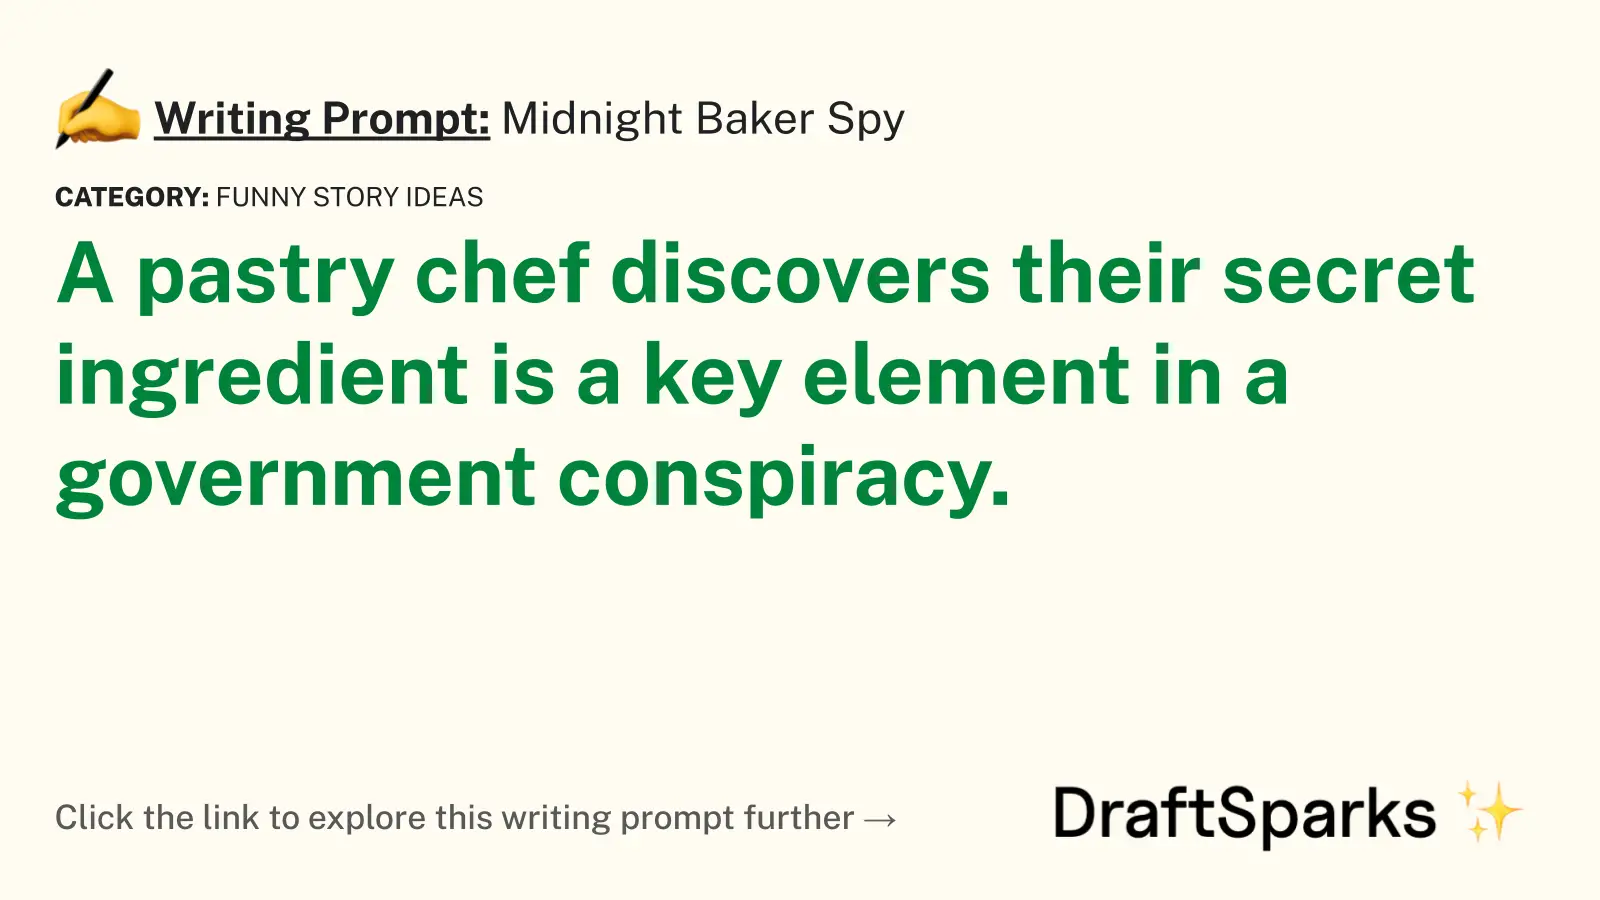 Midnight Baker Spy